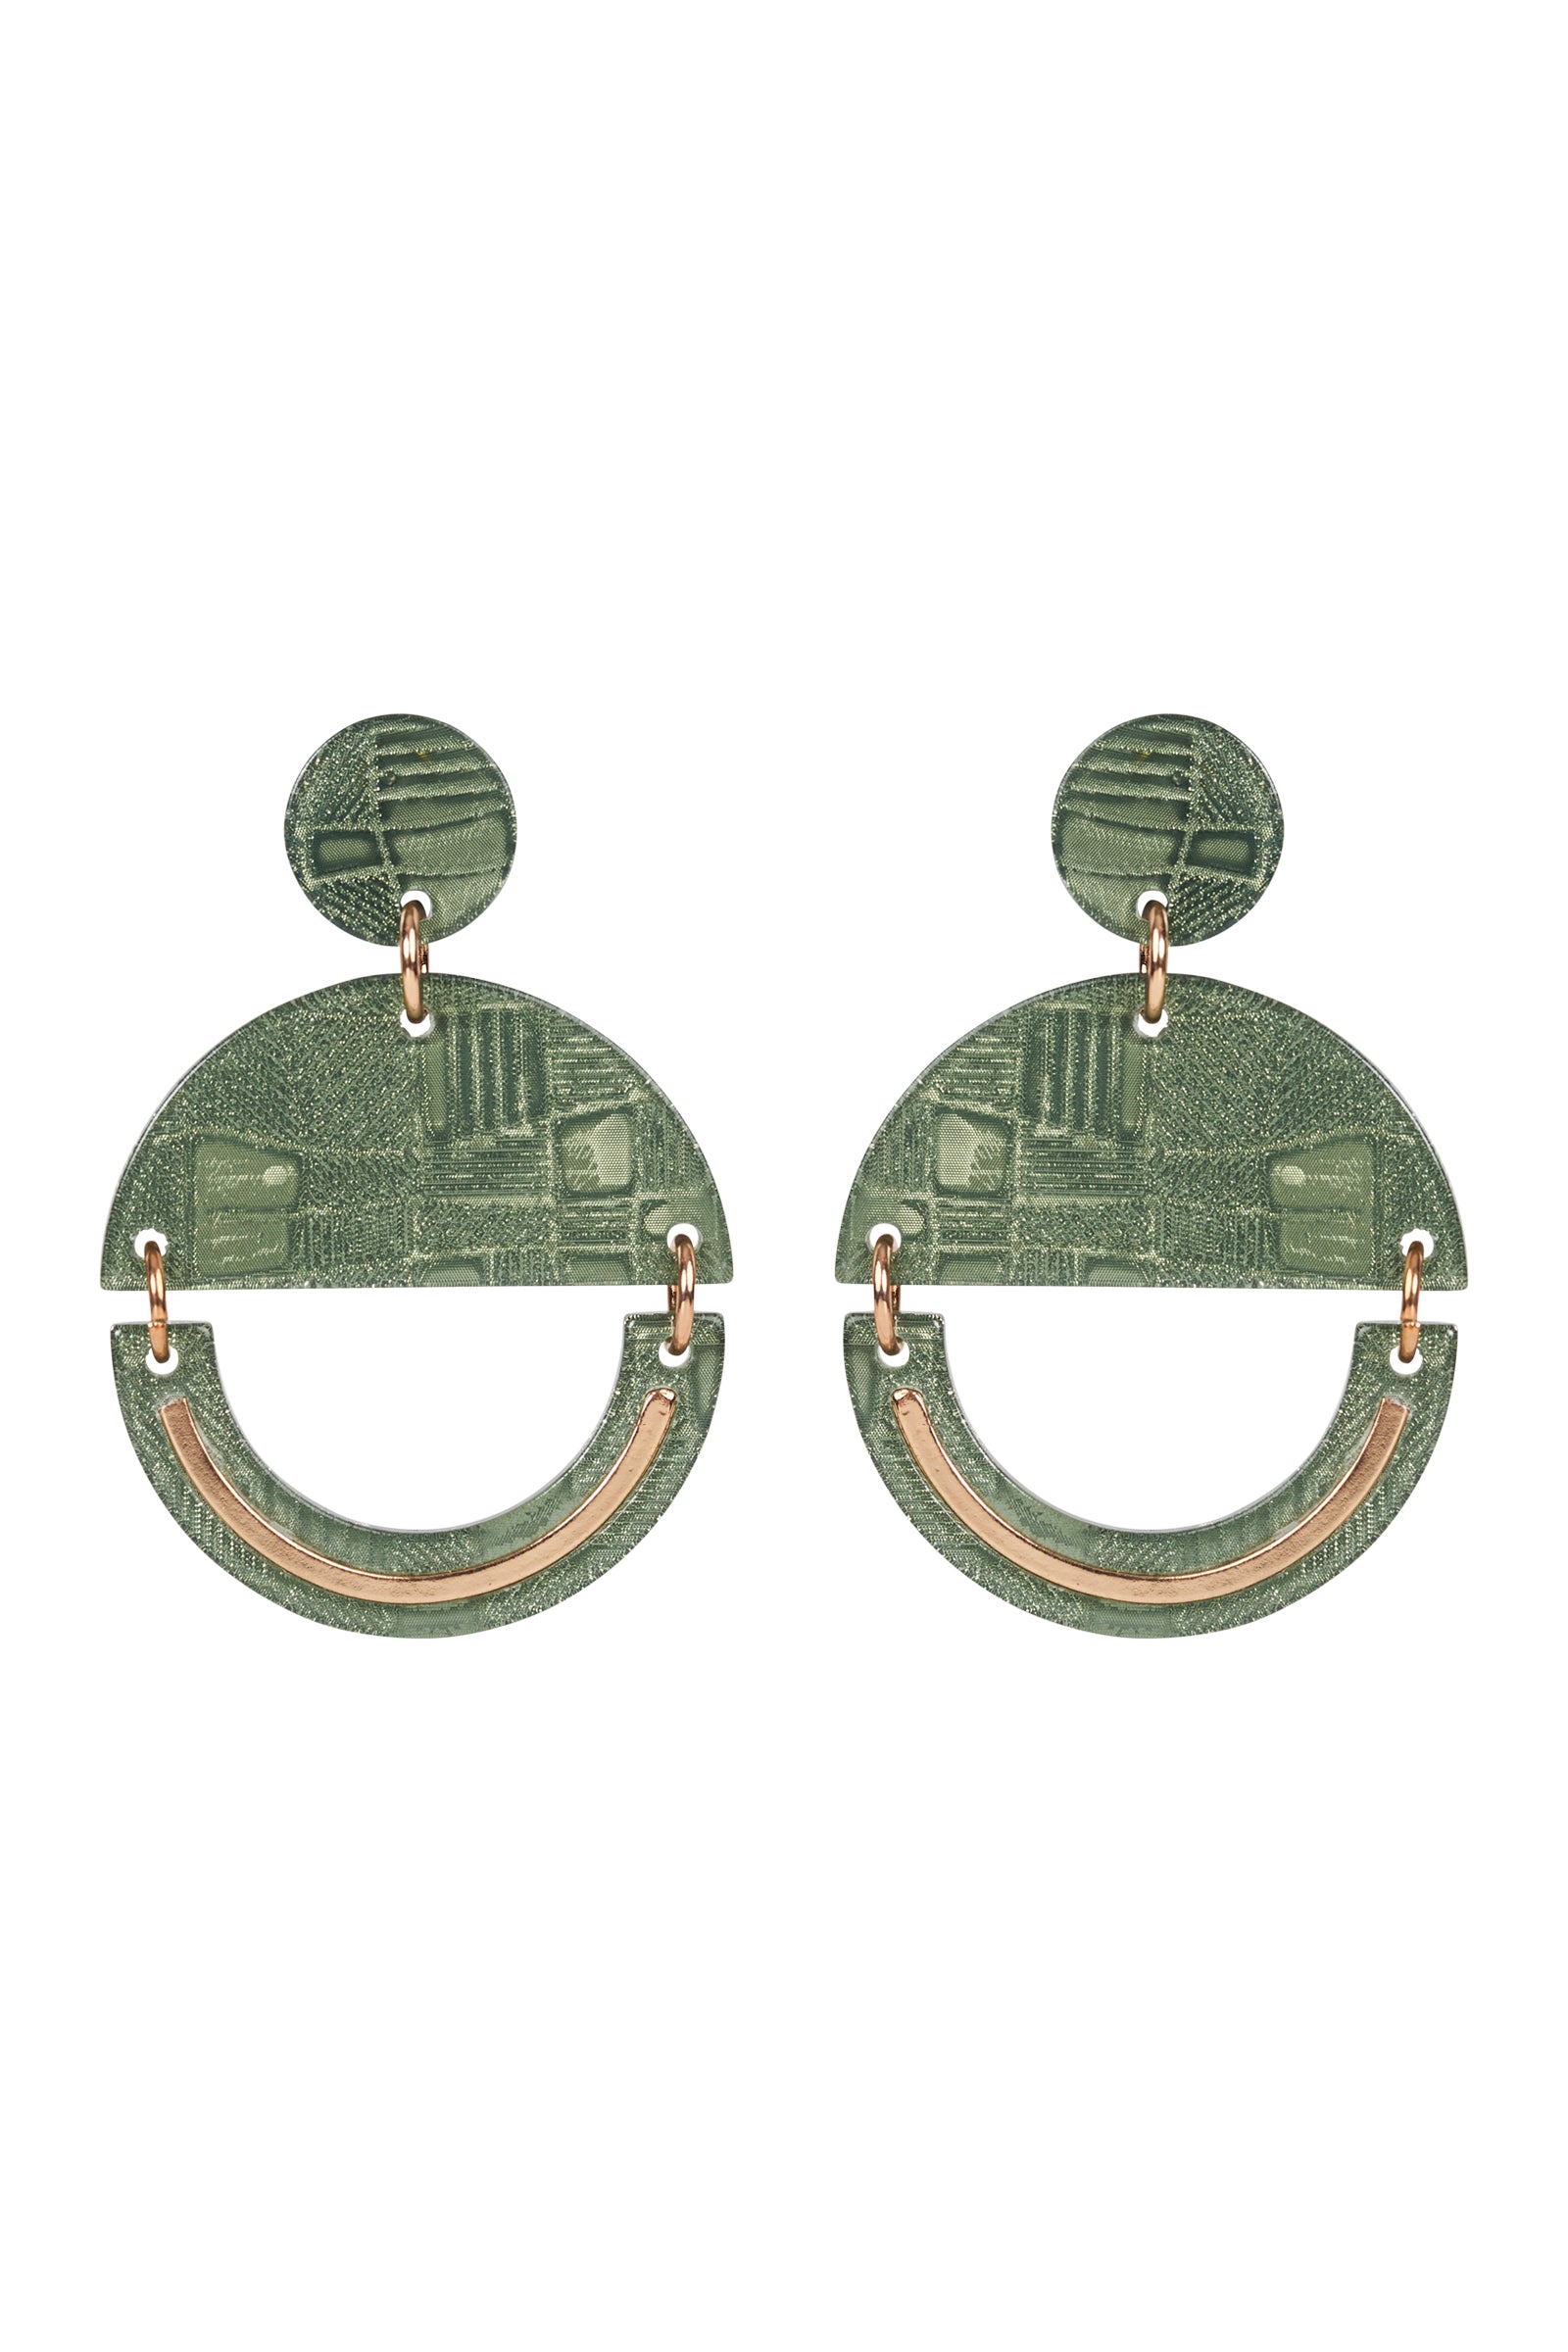 Bantu Dome Earring - Thyme - eb&ive Earring